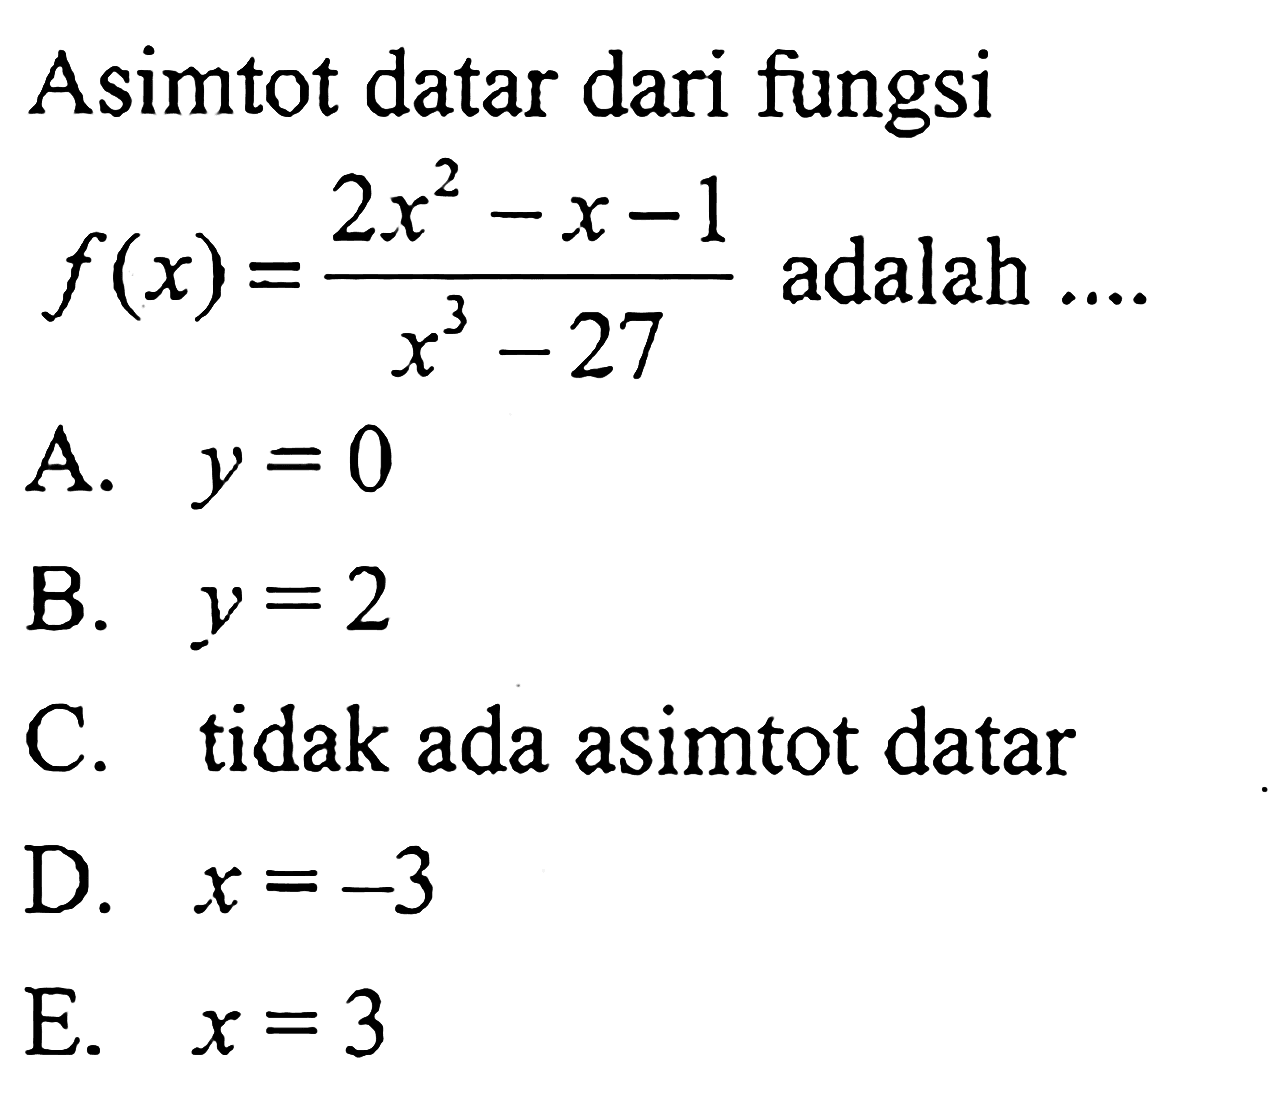 Asimtot datar dari fungsi f(x)=(2x^2-x-1)/(x^3-27) adalah ...